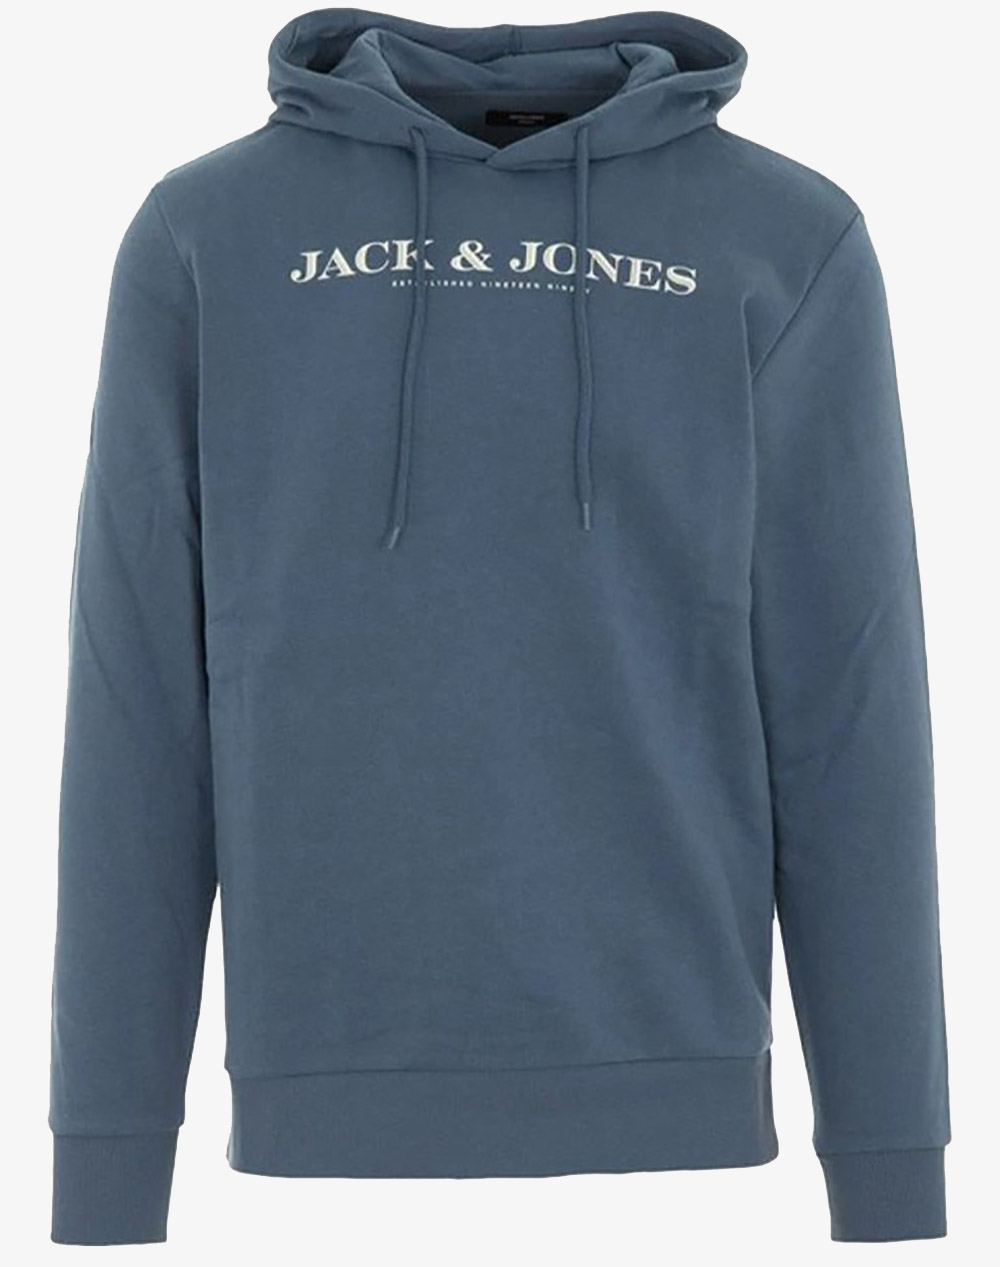 JACK&JONES JACK&JONES JPRBLACARTER SWEAT HOOD FST 12247891-Bering Sea Indigo